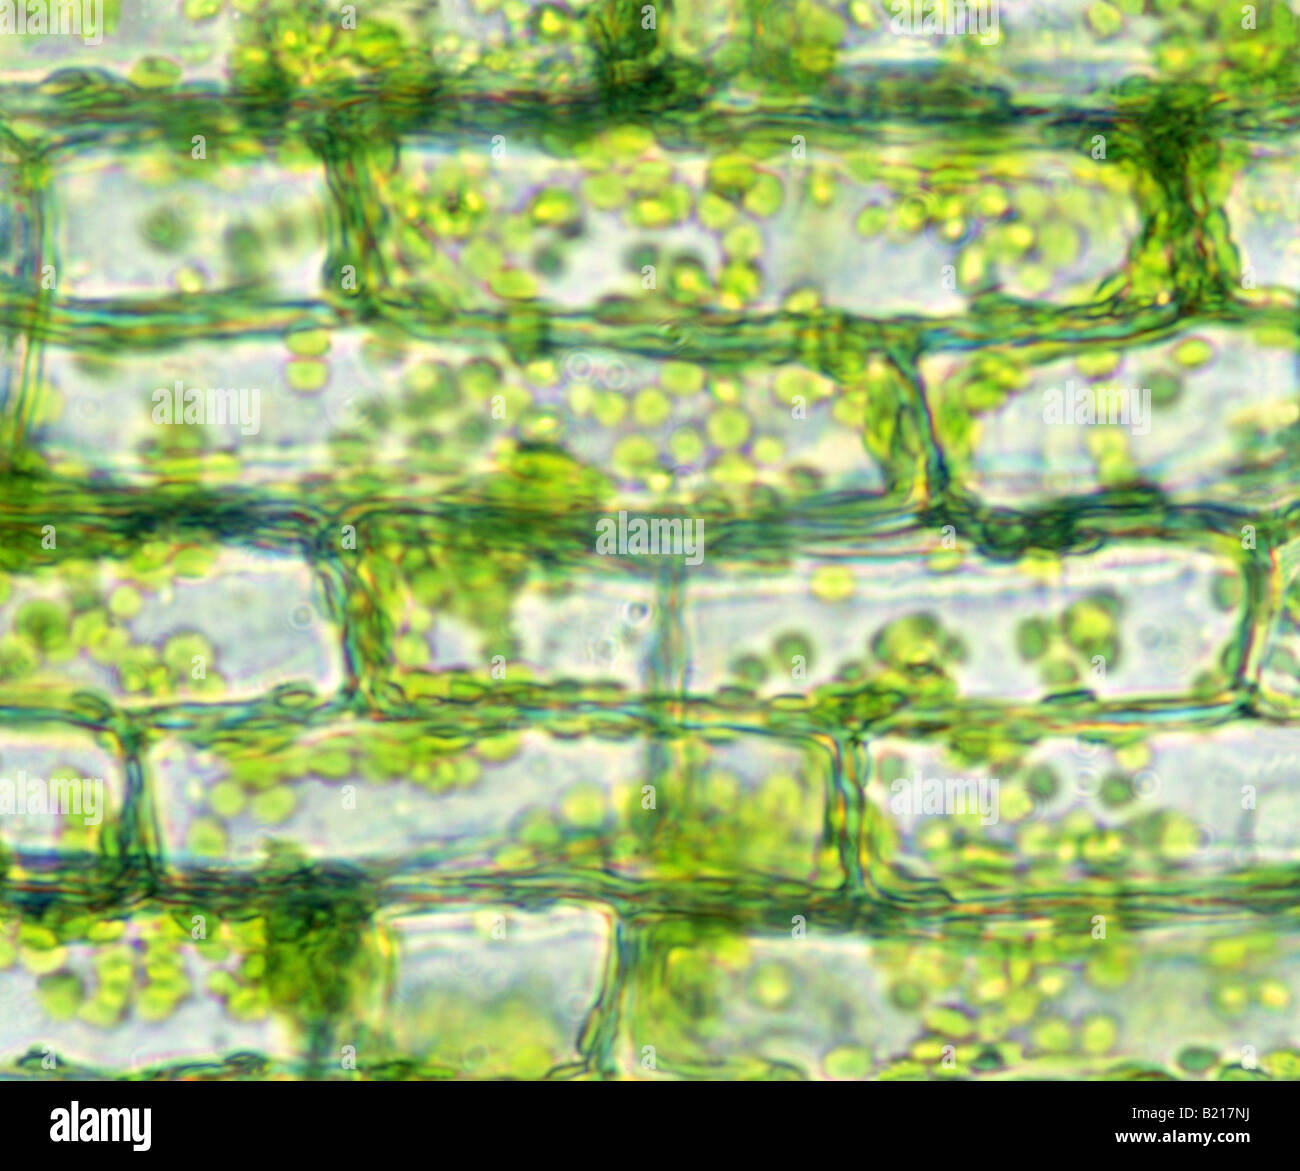 Les mauvaises herbes de l'EAU LES CELLULES DES FEUILLES ELODEA SP ANACHRIS VIVACES plante présentant des chloroplastes de la paroi cellulaire 200X STUDIO Banque D'Images